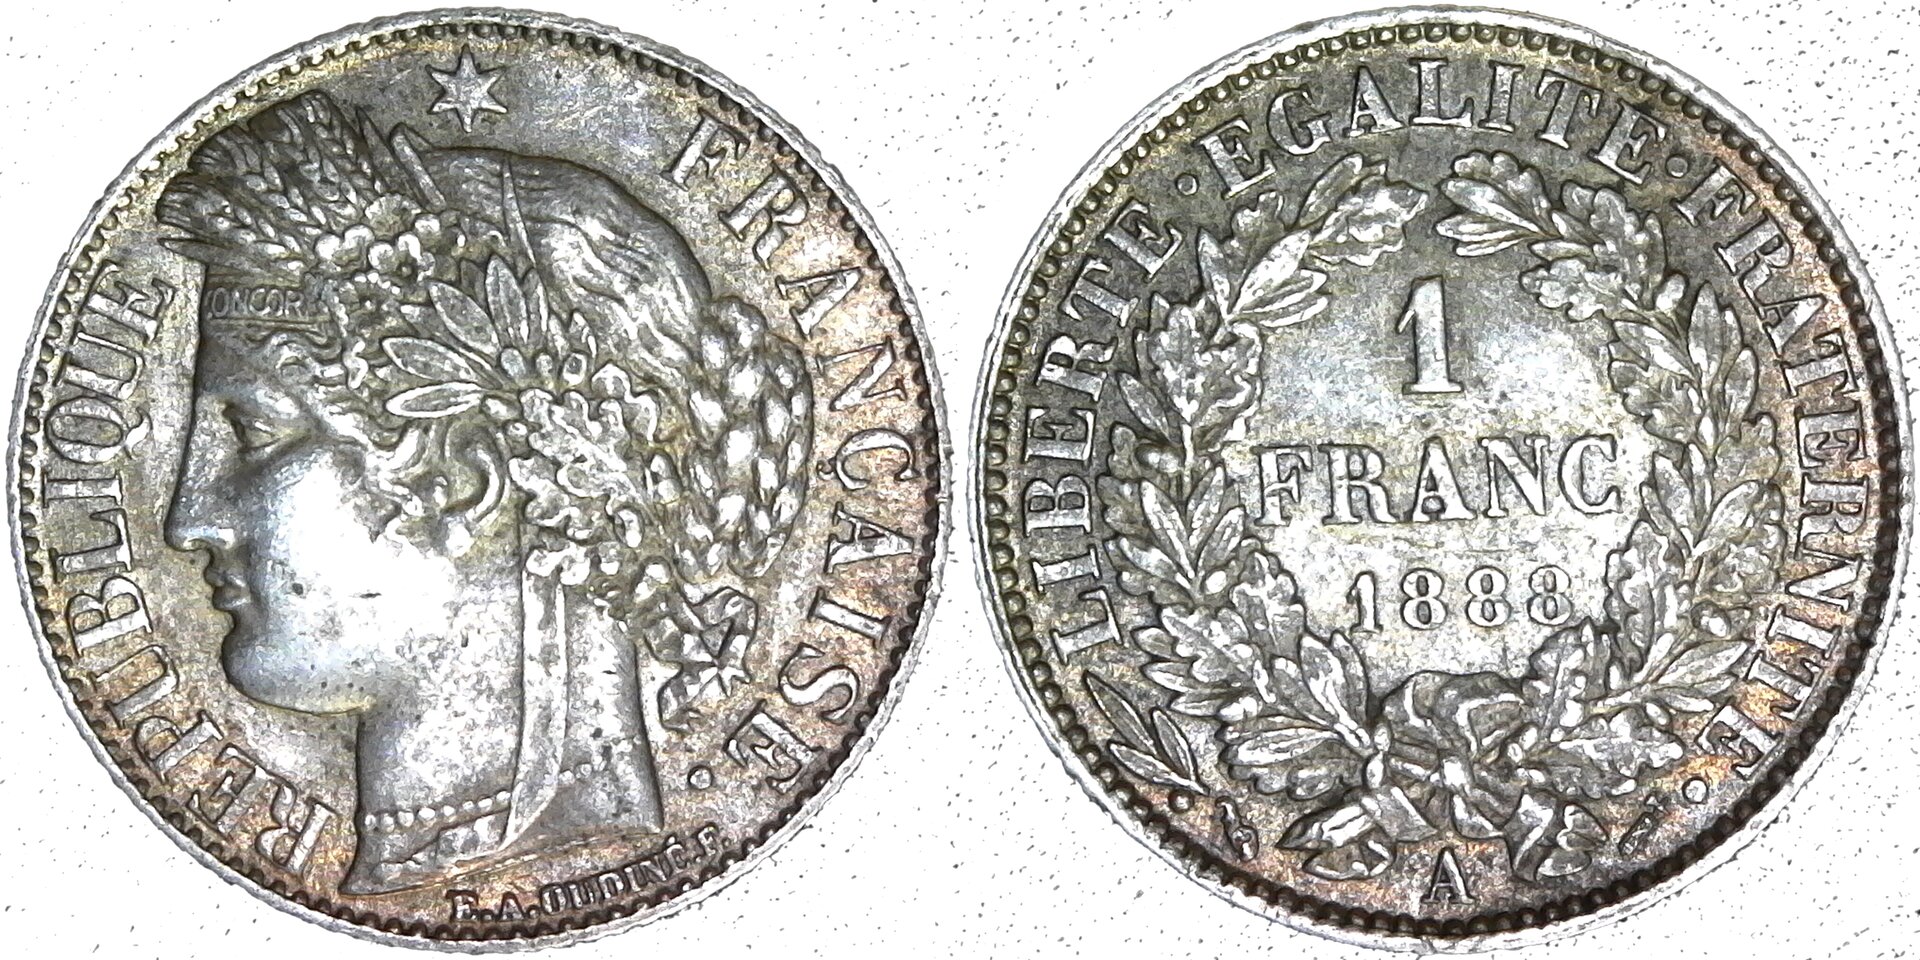 France 1 Franc 1888 obv-side-cutout.jpg